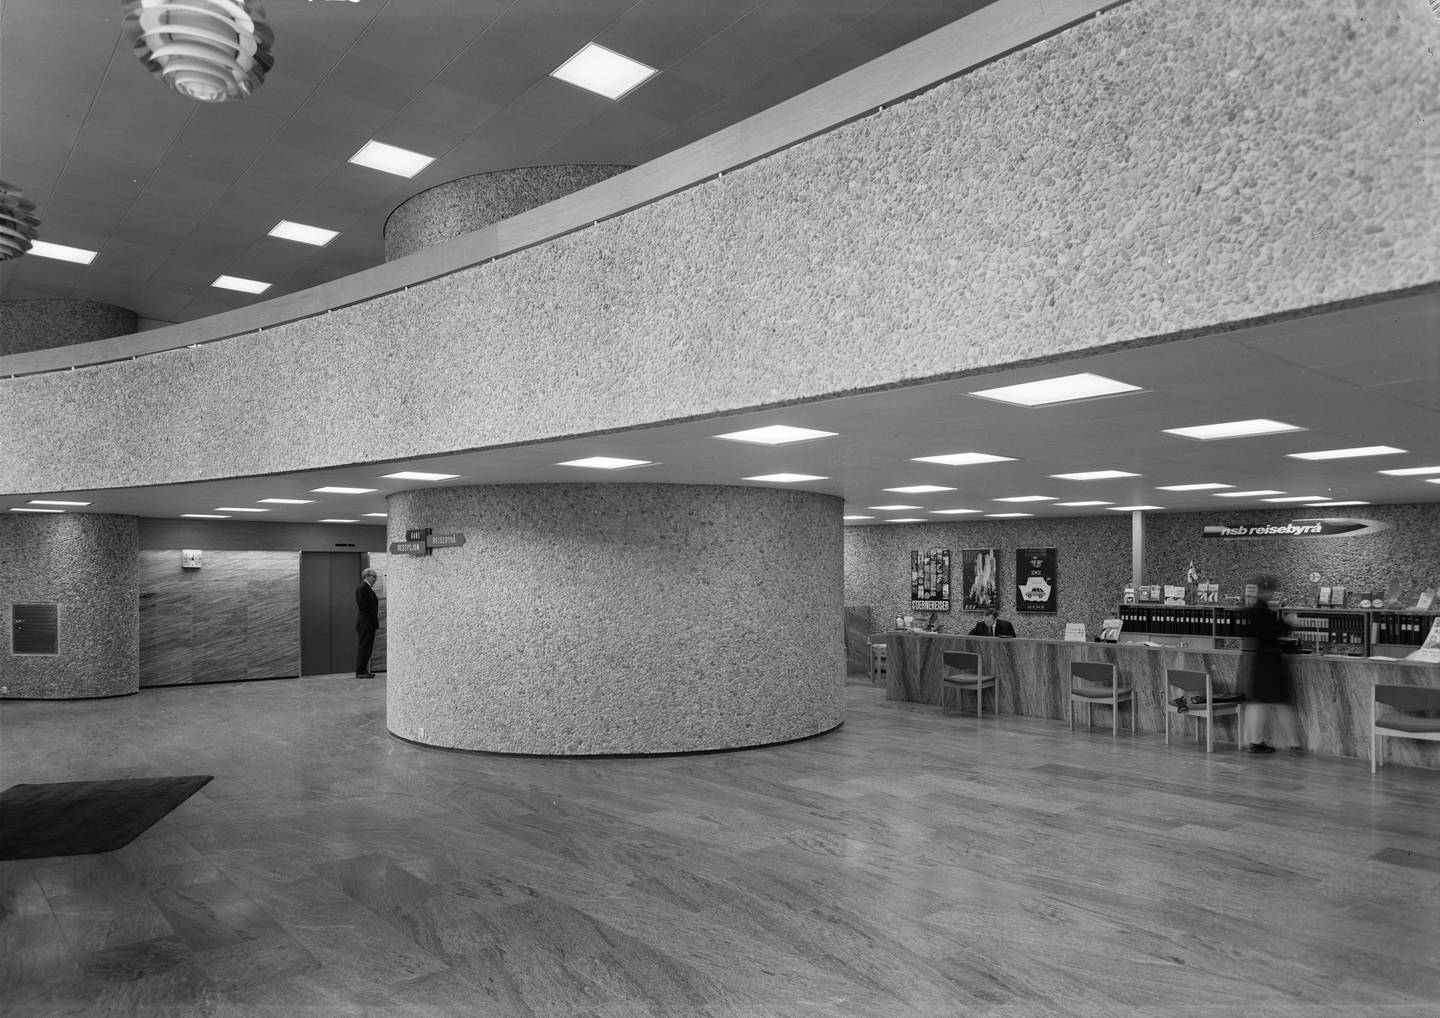 Interiør fra Y-blokka i Regjeringskvartalet. 
Arkitekt Viksjø vant arkitektkonkurransen i 1939. Høyblokka i kvartalet sto ferdig i 1958, mens Y-blokka ble føyd til i 1969. *** Local Caption *** Erling Viksjø